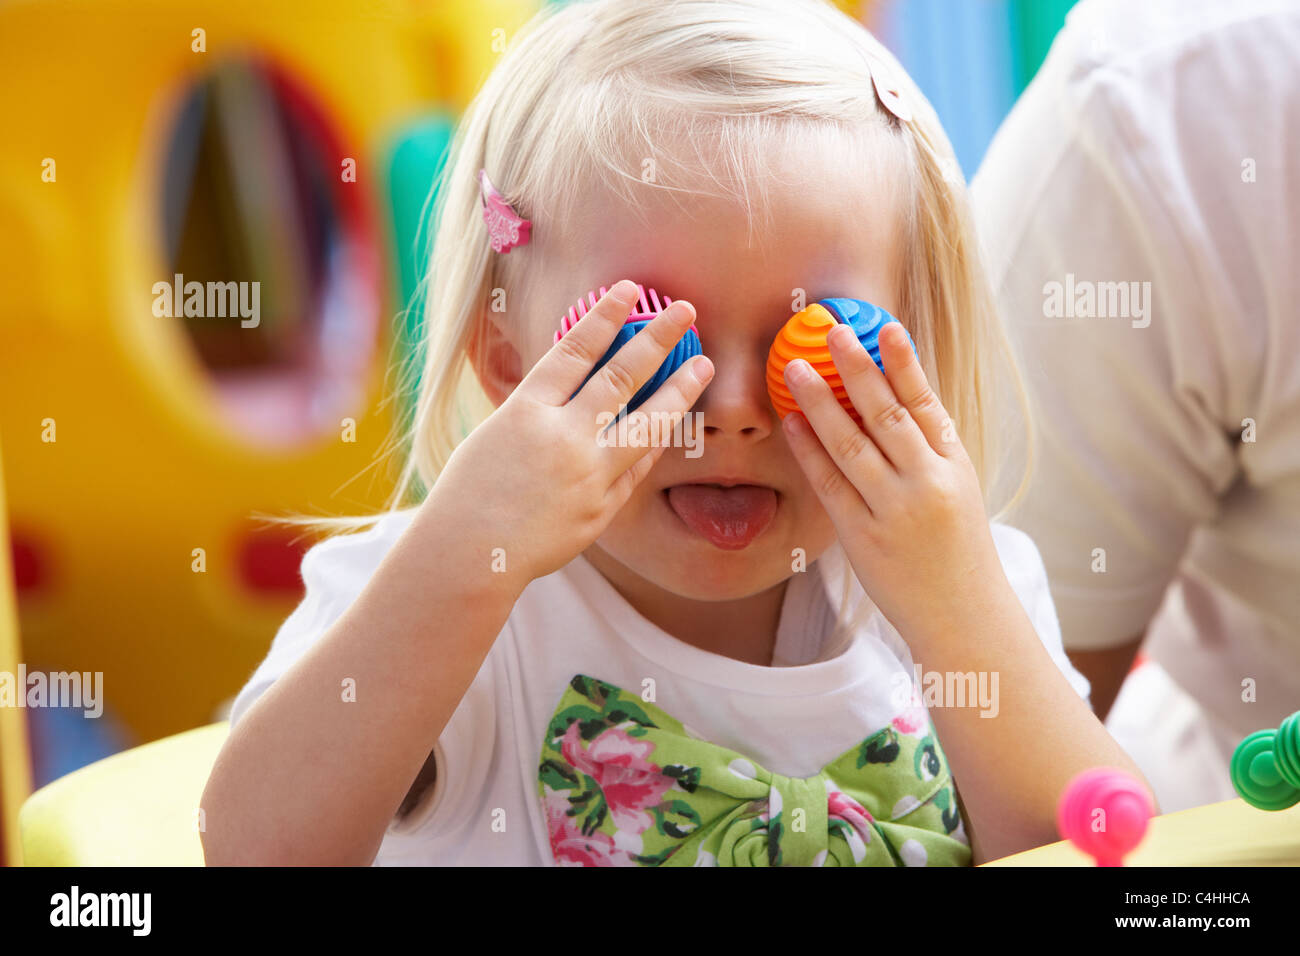 Jeune fille jouant avec des jouets Banque D'Images